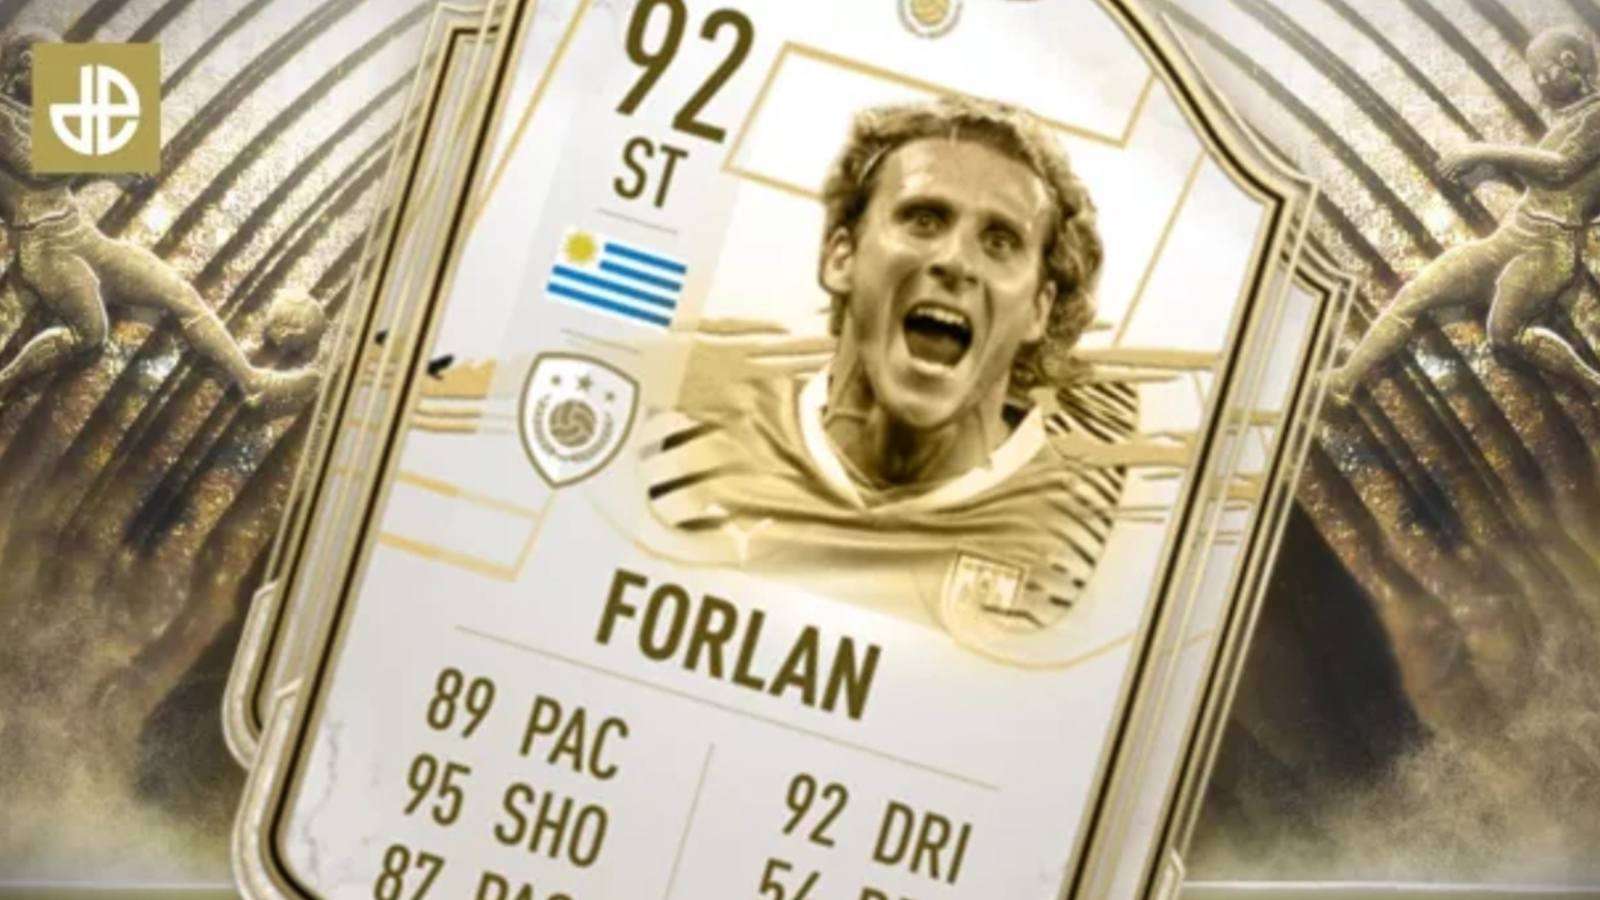 Carte Icône de Diego Forlan sur FIFA 21